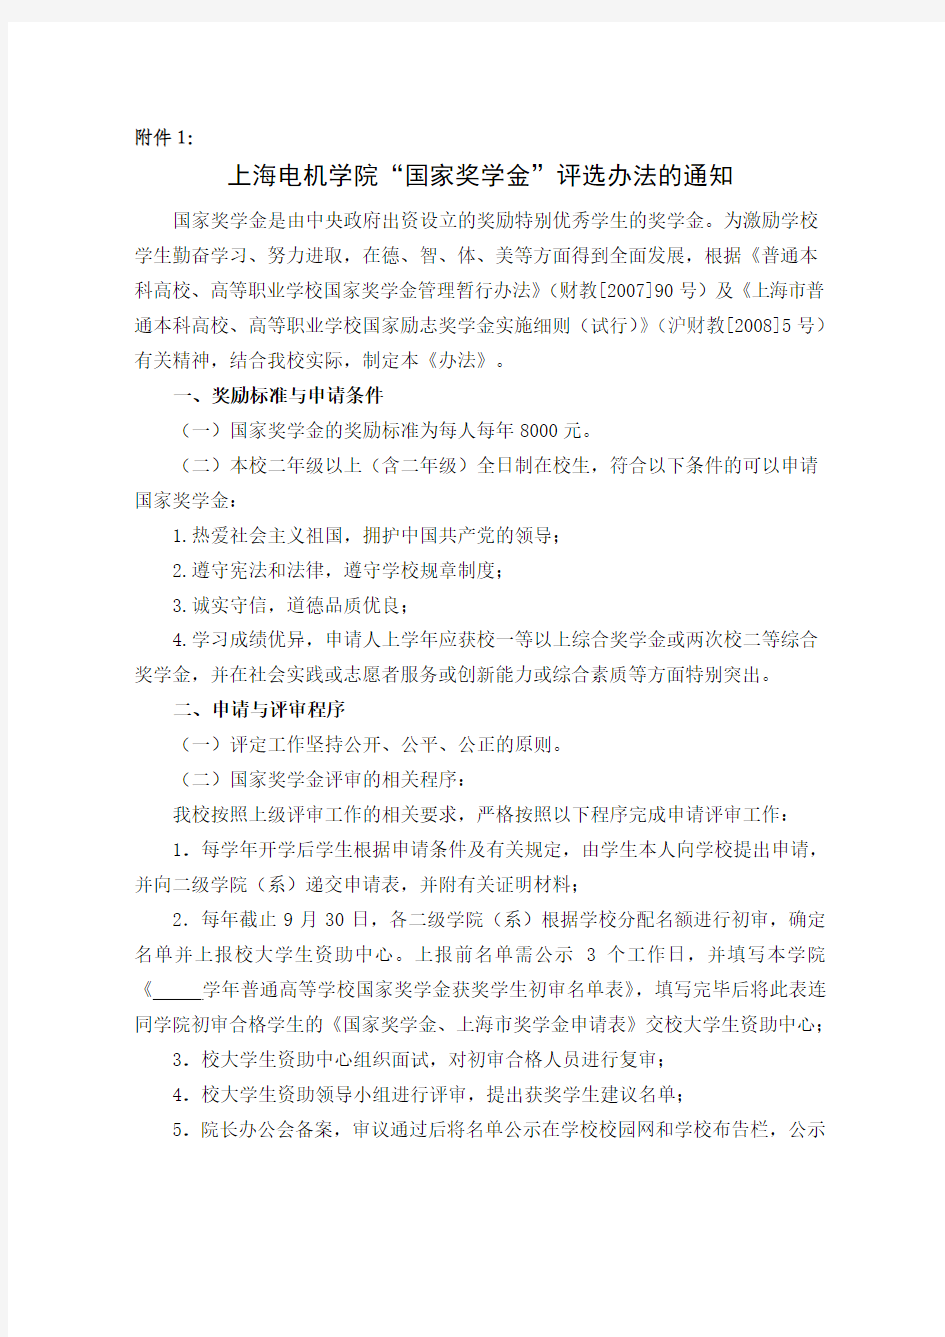 上海电机学院“国家奖学金”评选办法